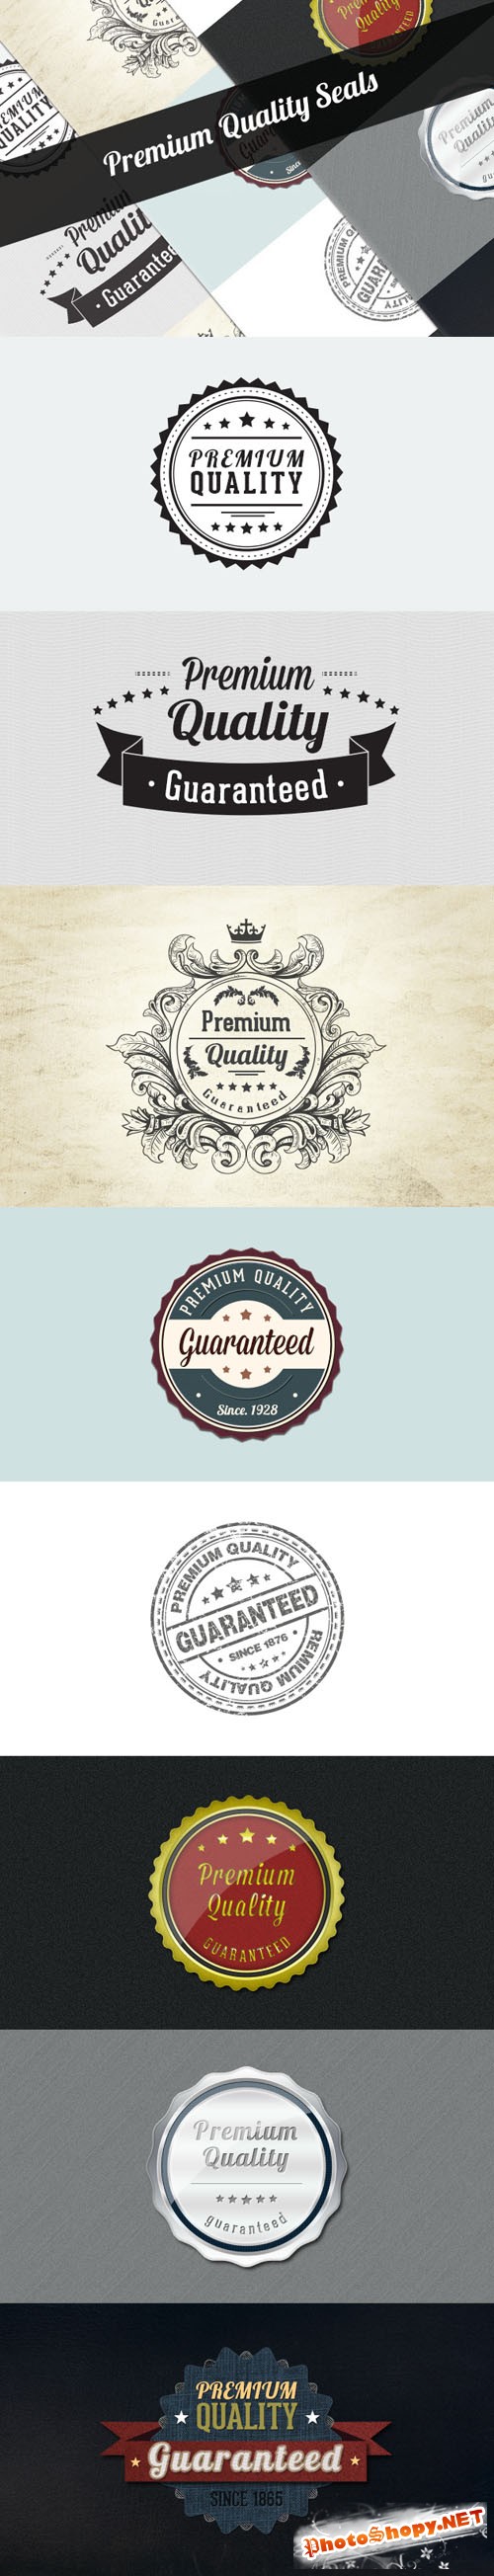 Designtnt - Premium Quality Seals